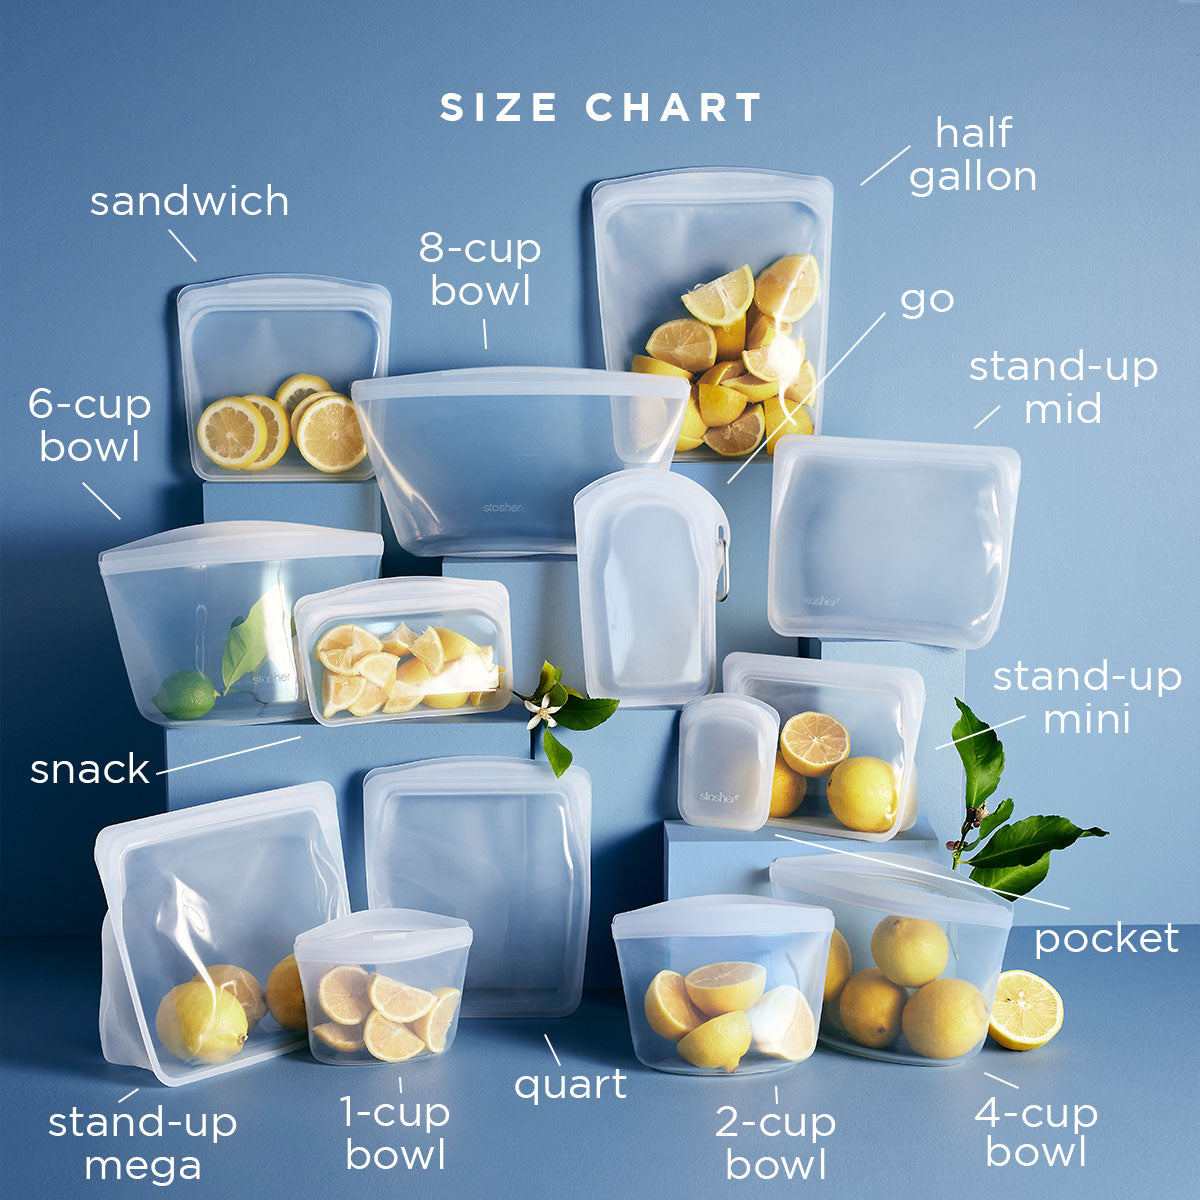 Zero-Waste Reusable Silicone Food Bags (4 pcs./set)